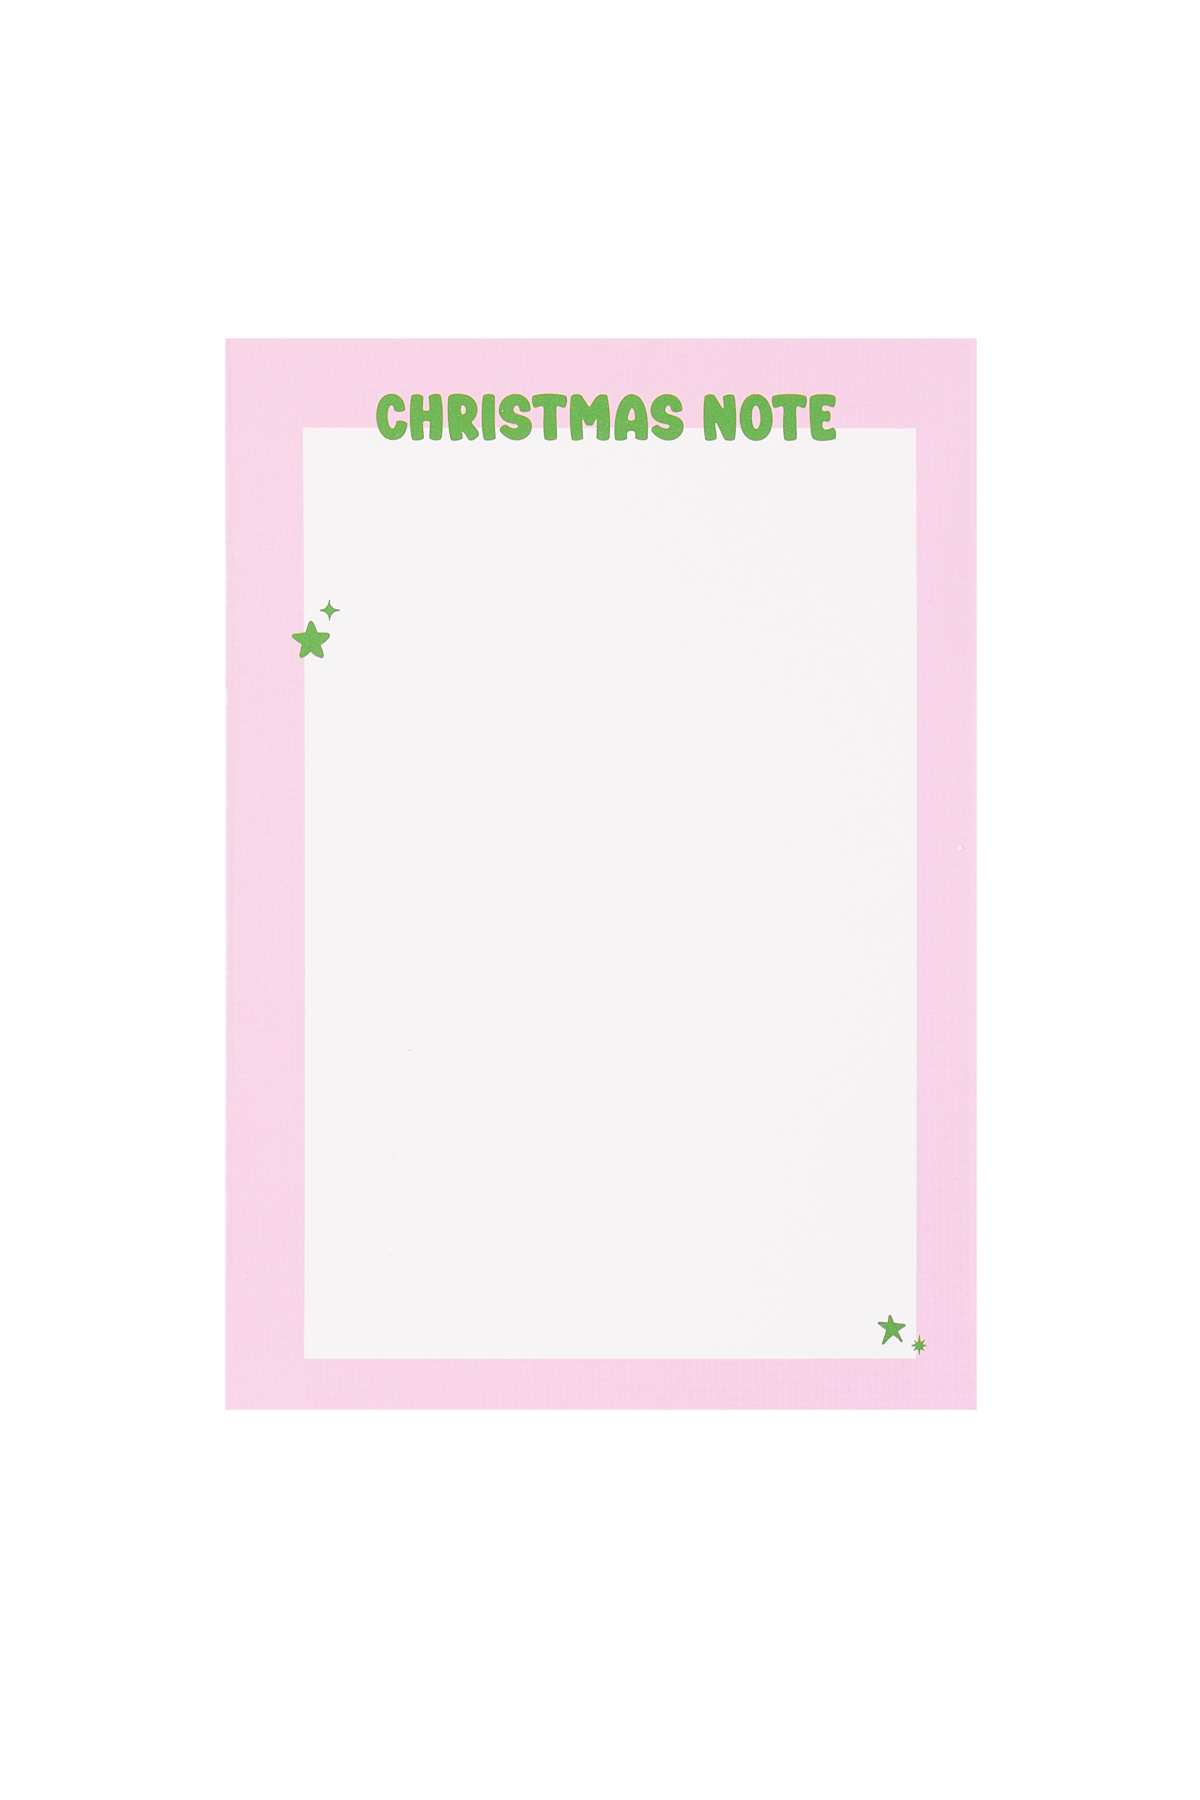 La tarjeta de felicitación navideña se siente un poco como Navidad: rosa h5 Imagen2